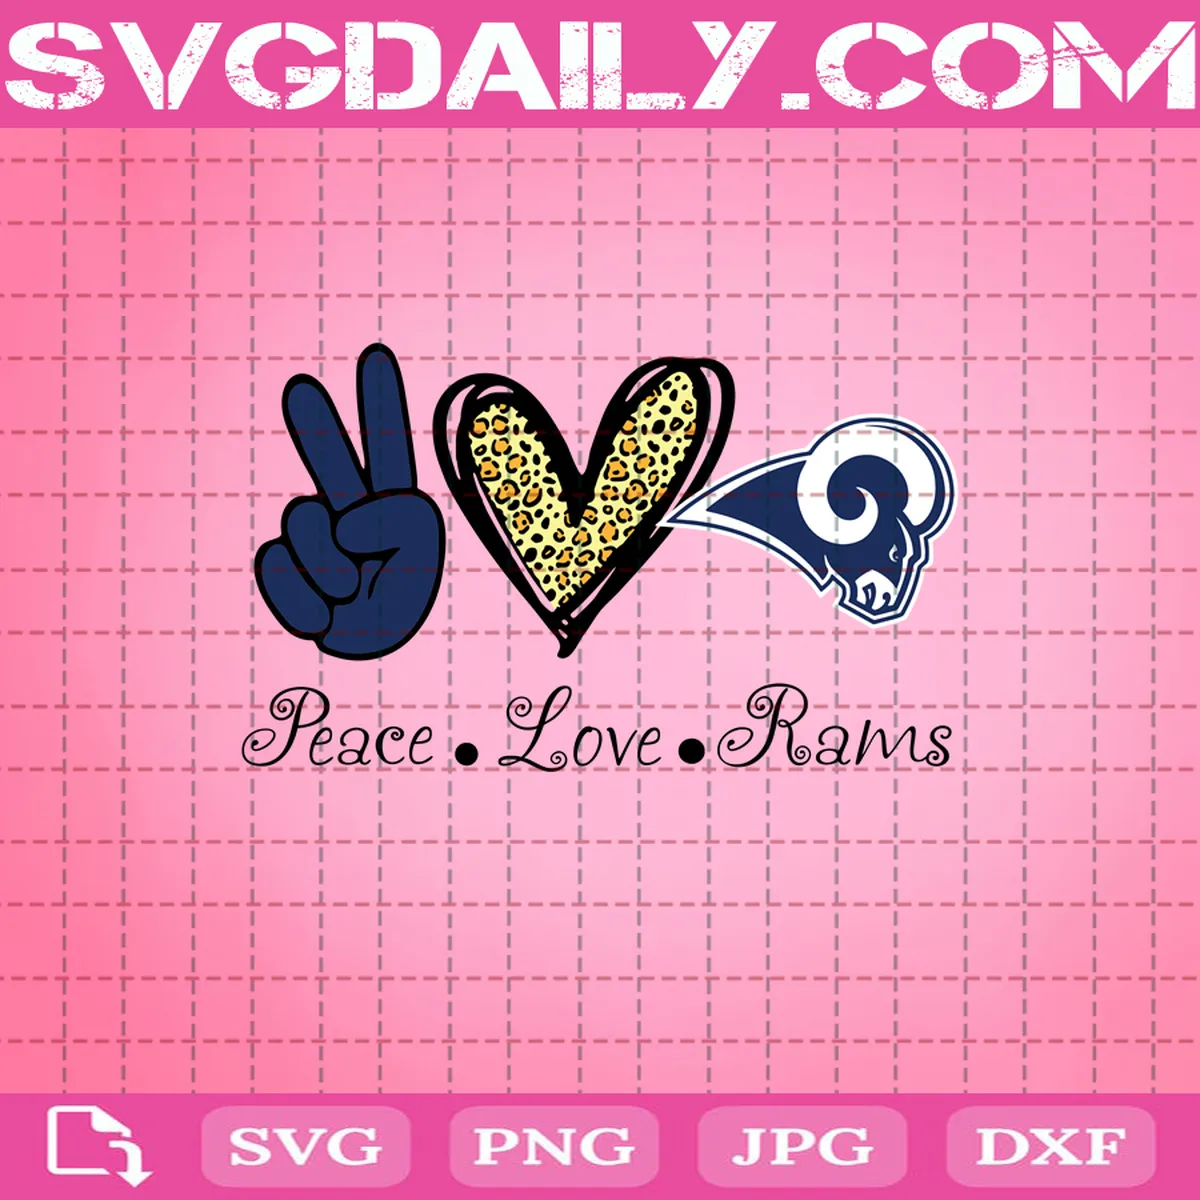 Peace Love Los Angeles Rams Svg, Los Angeles Rams Svg, Rams Svg, NFL Svg, Sport Svg, Football Svg, Football Teams Svg